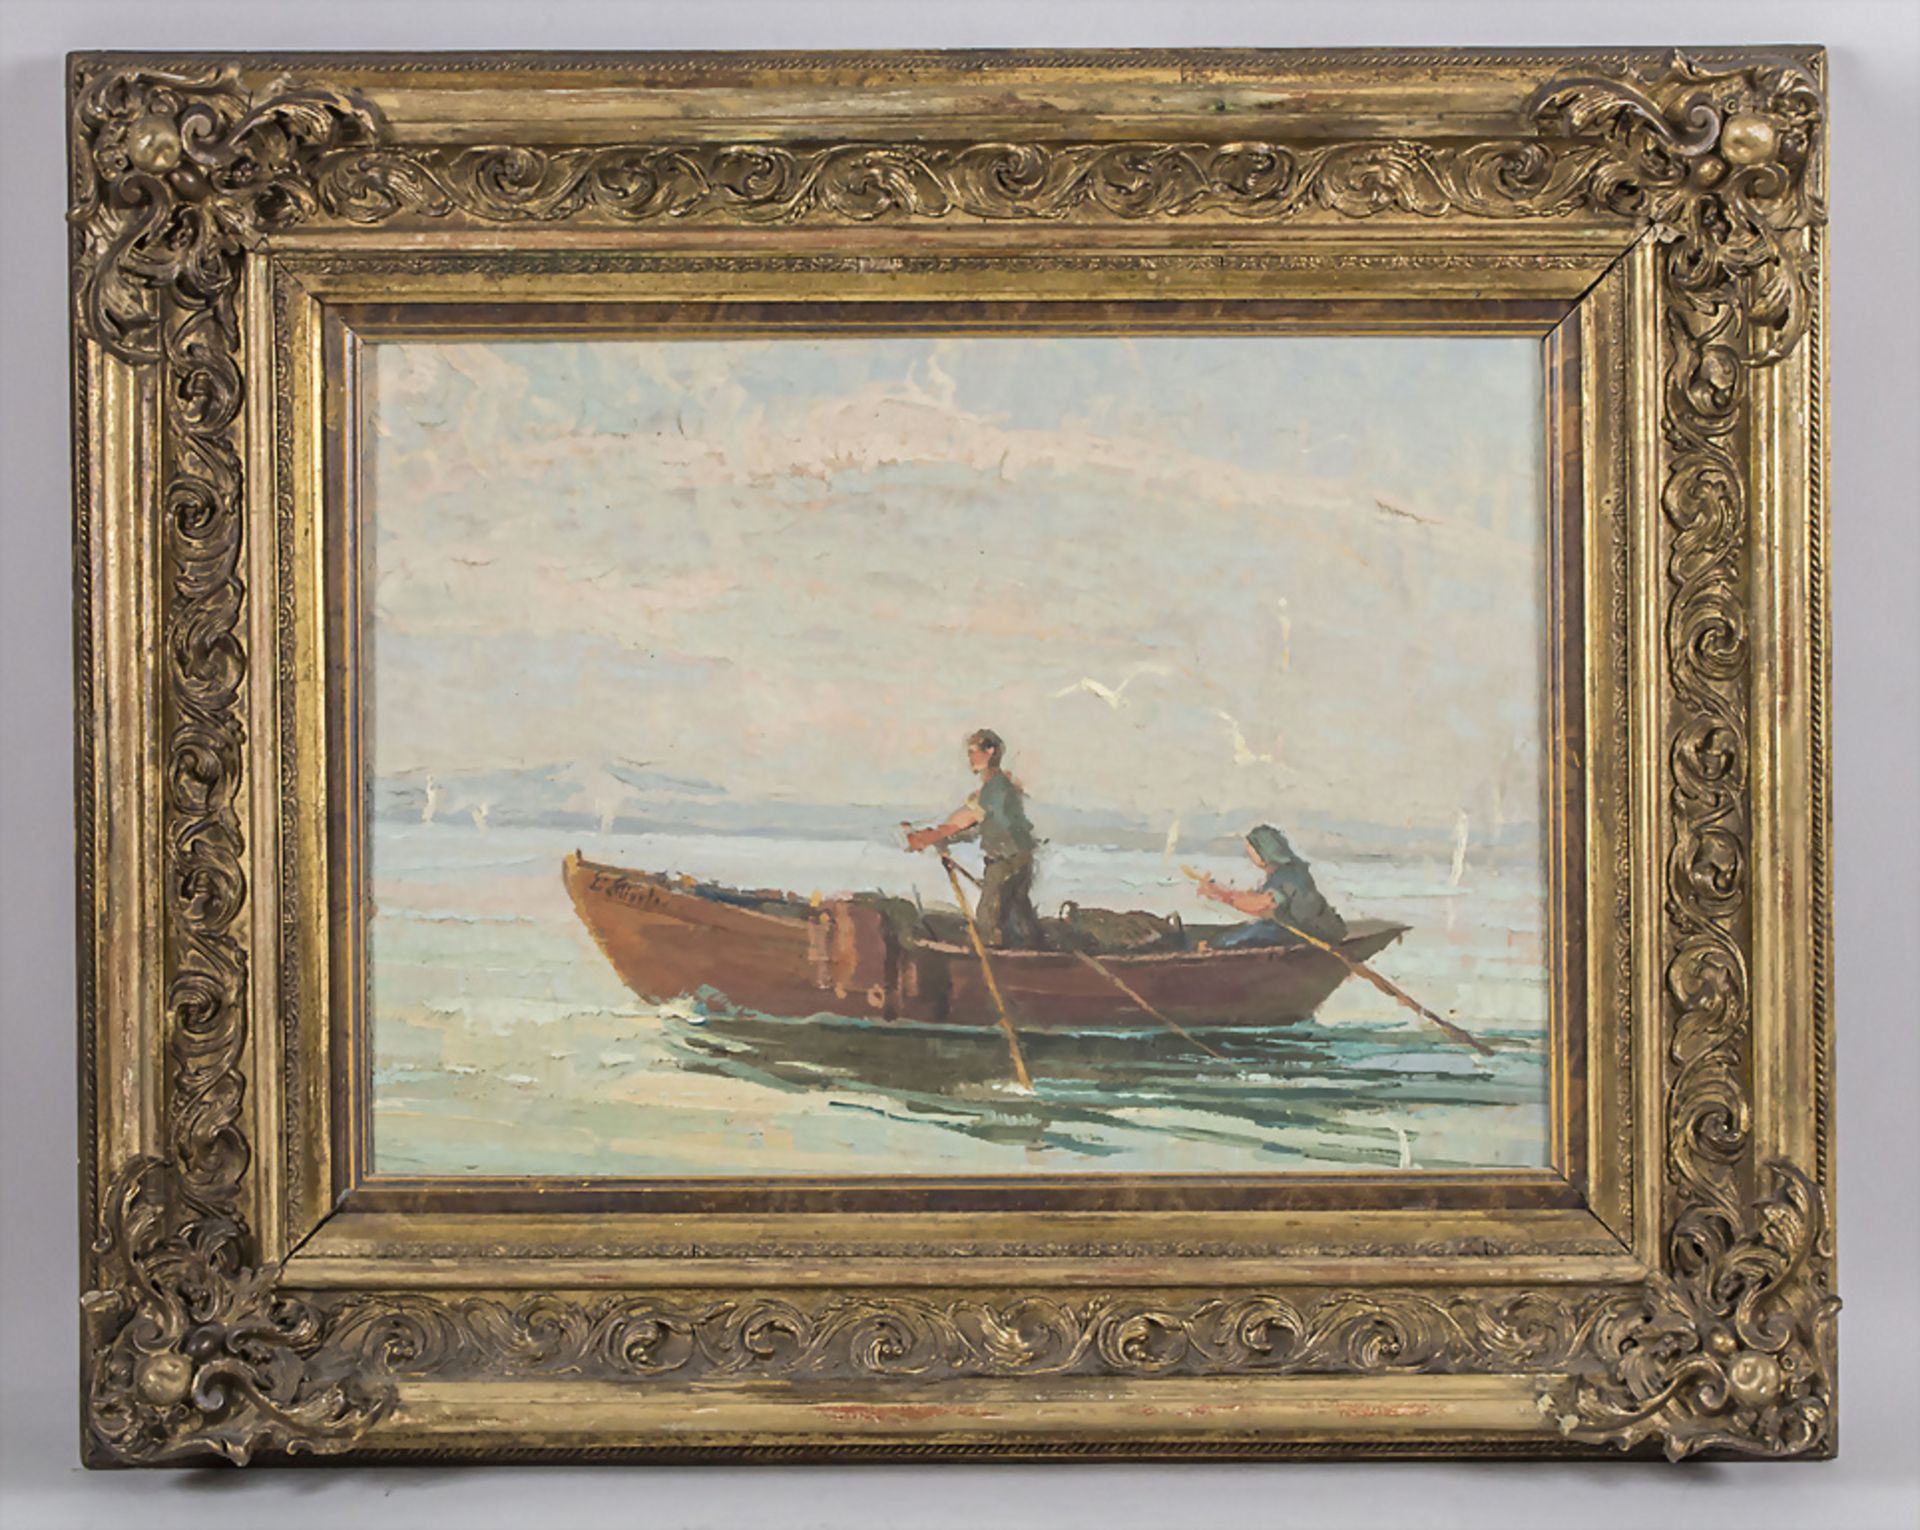 Unbekannter Künstler des 19./20. Jh., 'Das Ruderboot' / 'The rowing boat', wohl Italien - Image 2 of 3